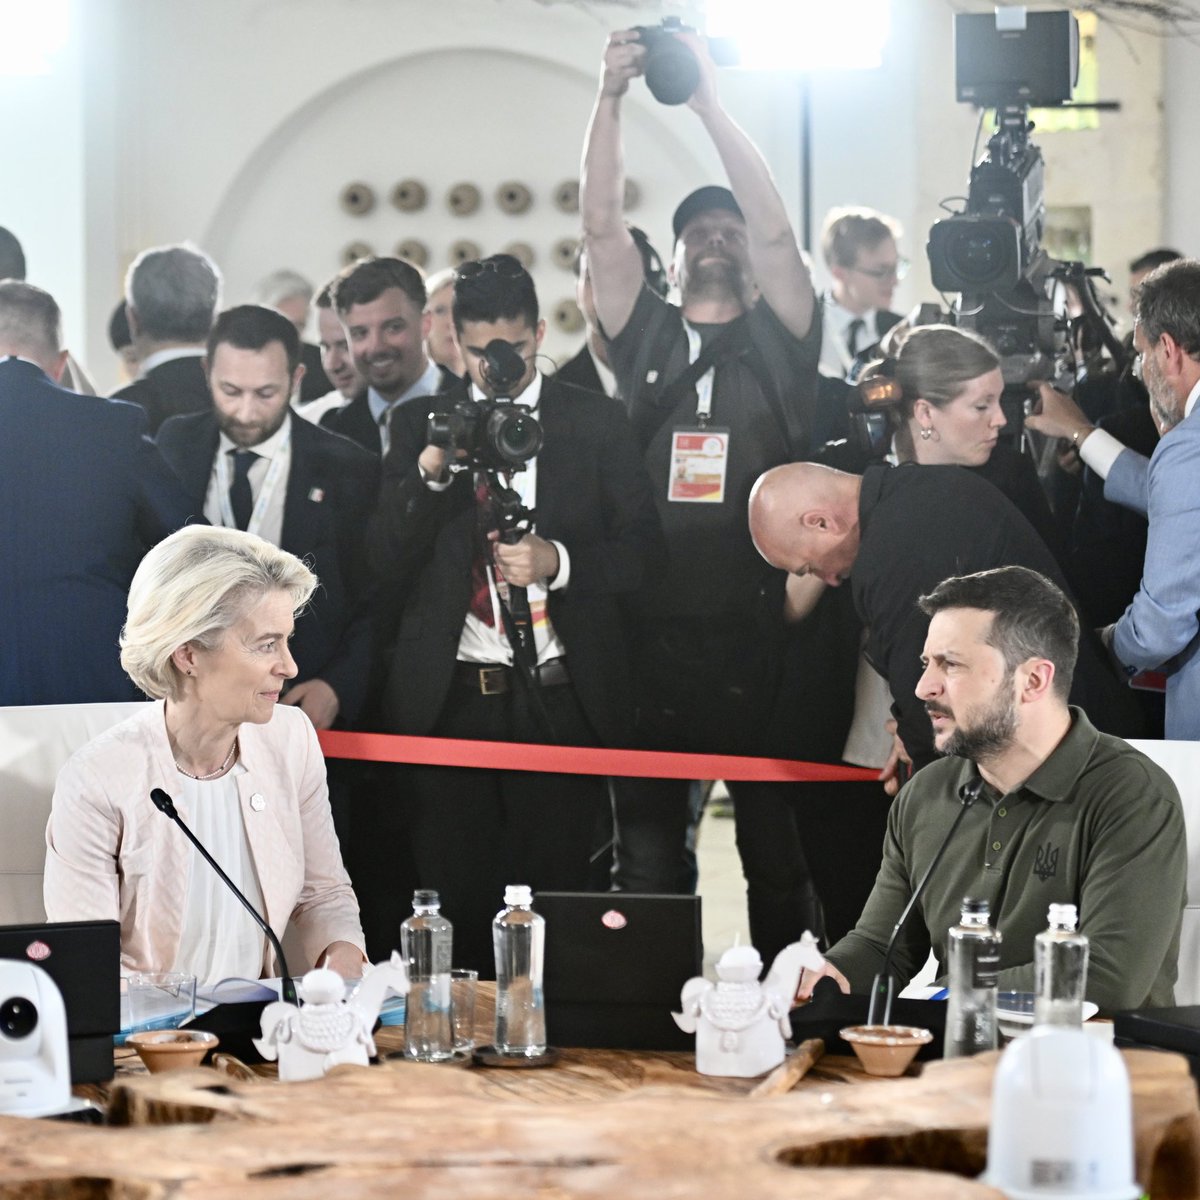 Ursula von der Leyen: Il G7 ha accettato di concedere all'Ucraina prestiti per un valore di circa 50 miliardi di dollari entro la fine dell'anno. Utilizzeremo i profitti inaspettati derivanti dagli asset sovrani della Russia per ripagarli. Ciò si basa sull'azione dell'UE, con la quale stiamo già indirizzando questi profitti inattesi alla difesa e alla ricostruzione dell'Ucraina